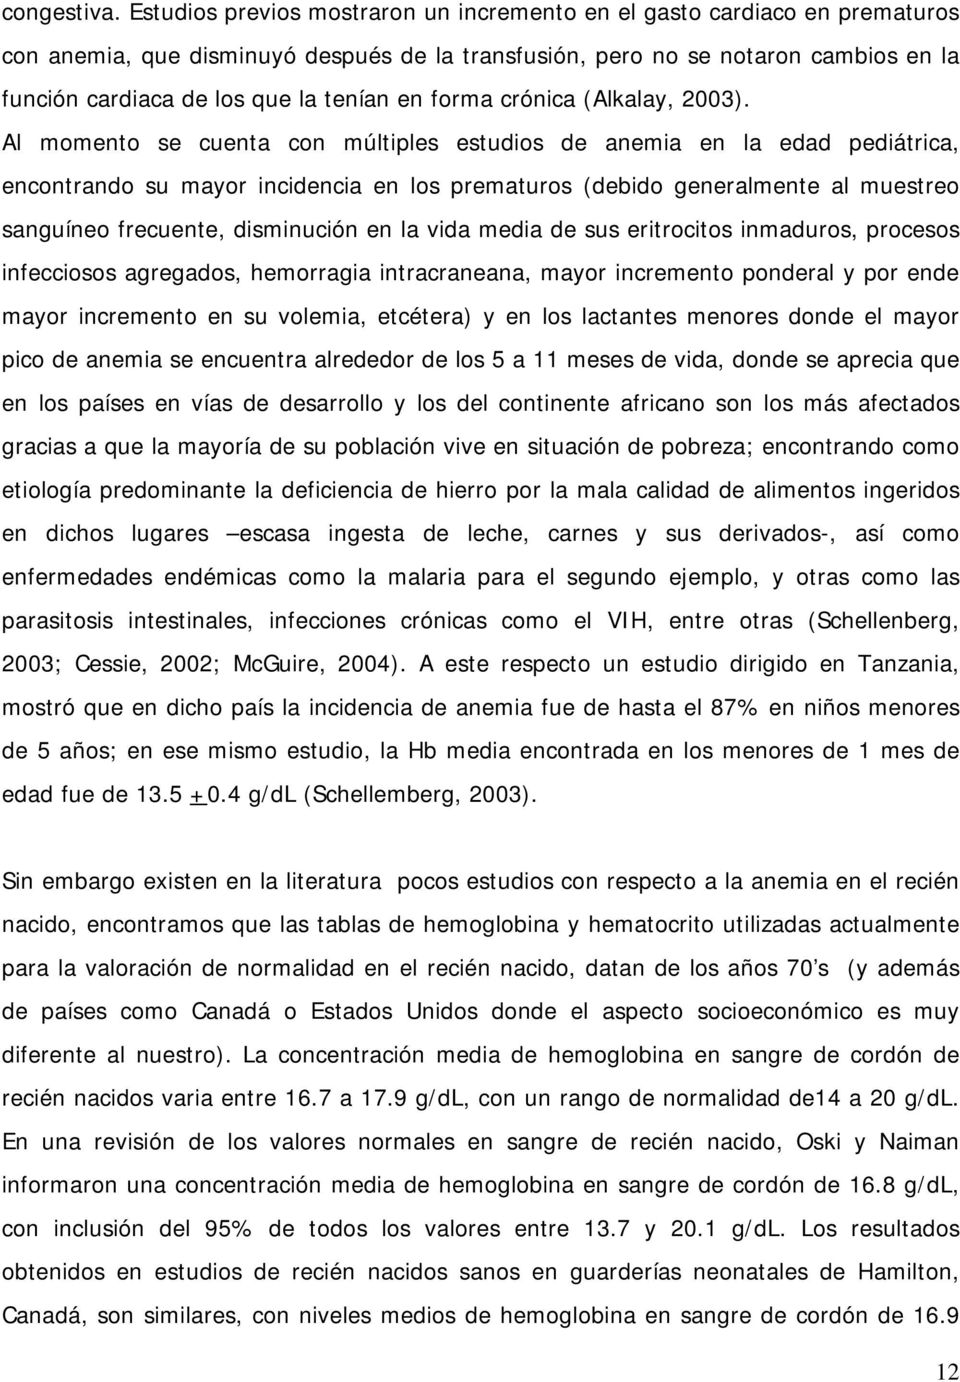 en forma crónica (Alkalay, 2003).